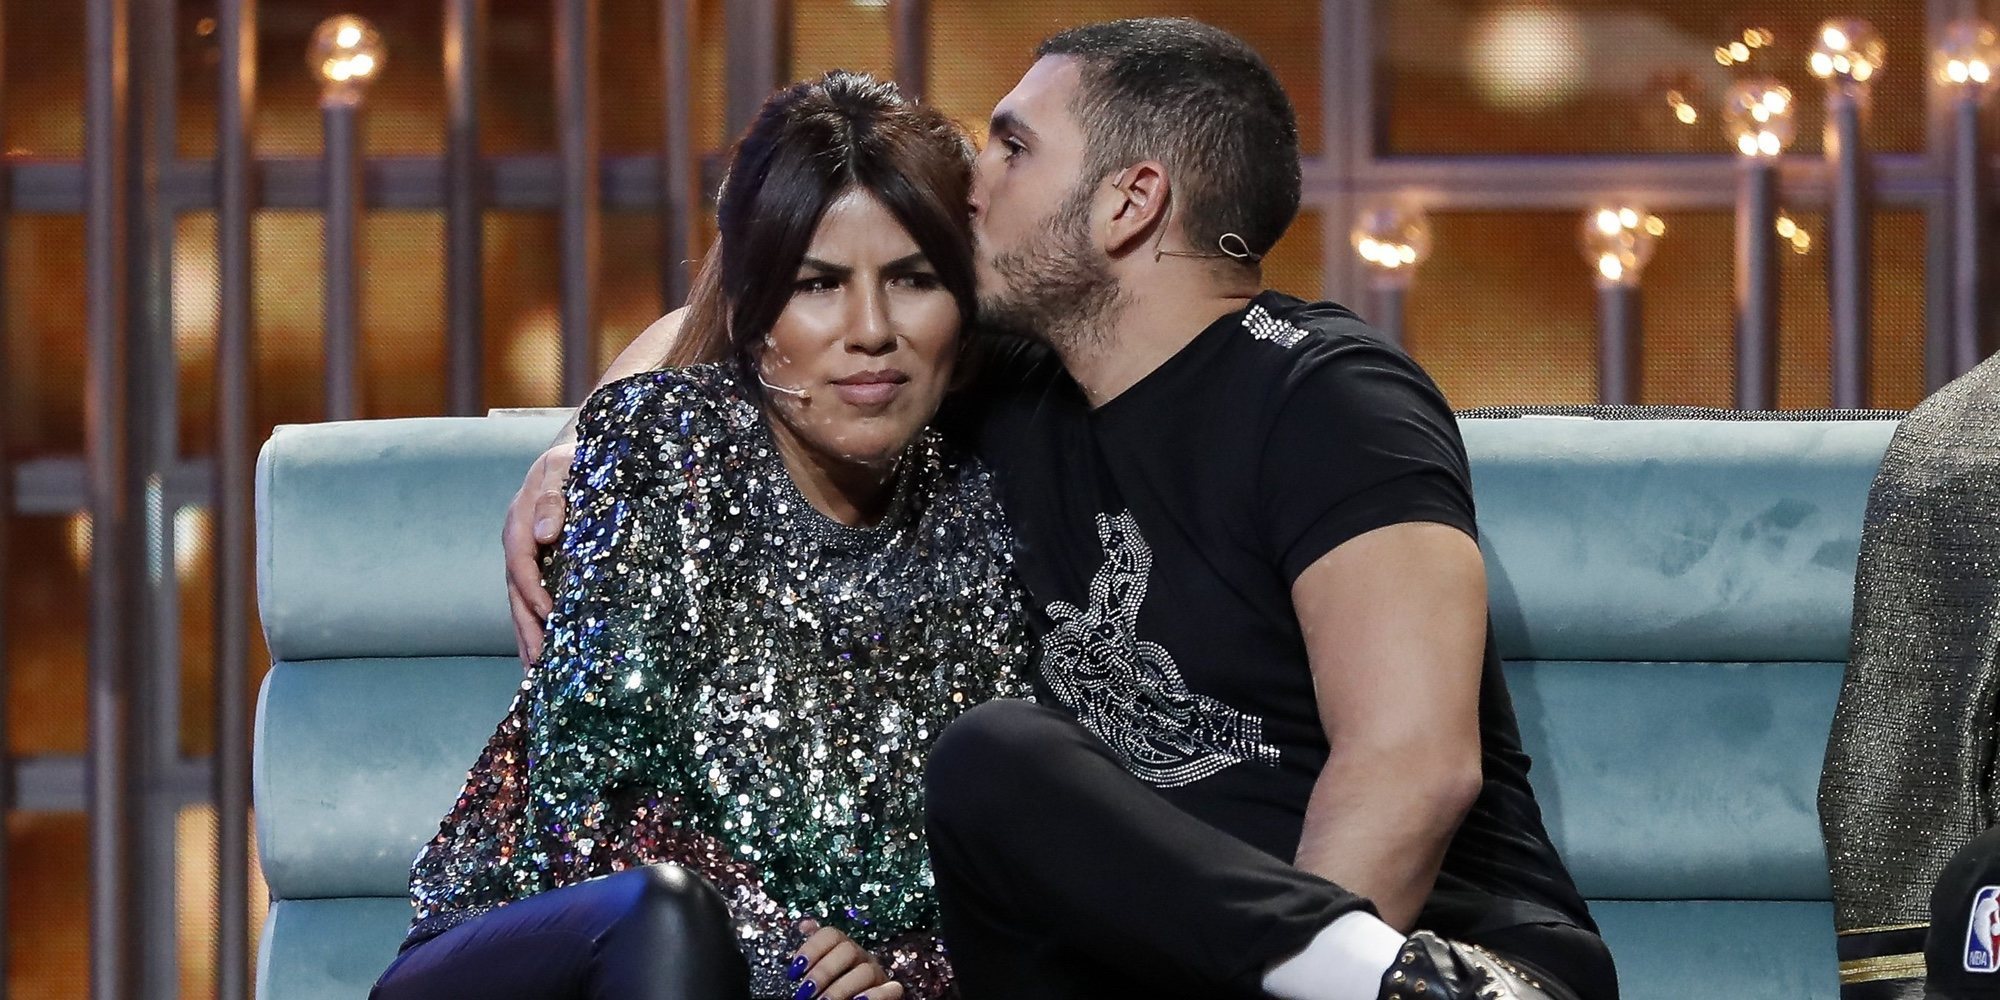 Chabelita Pantoja y Omar Montes se enfadan por una nueva supuesta infidelidad del cantante